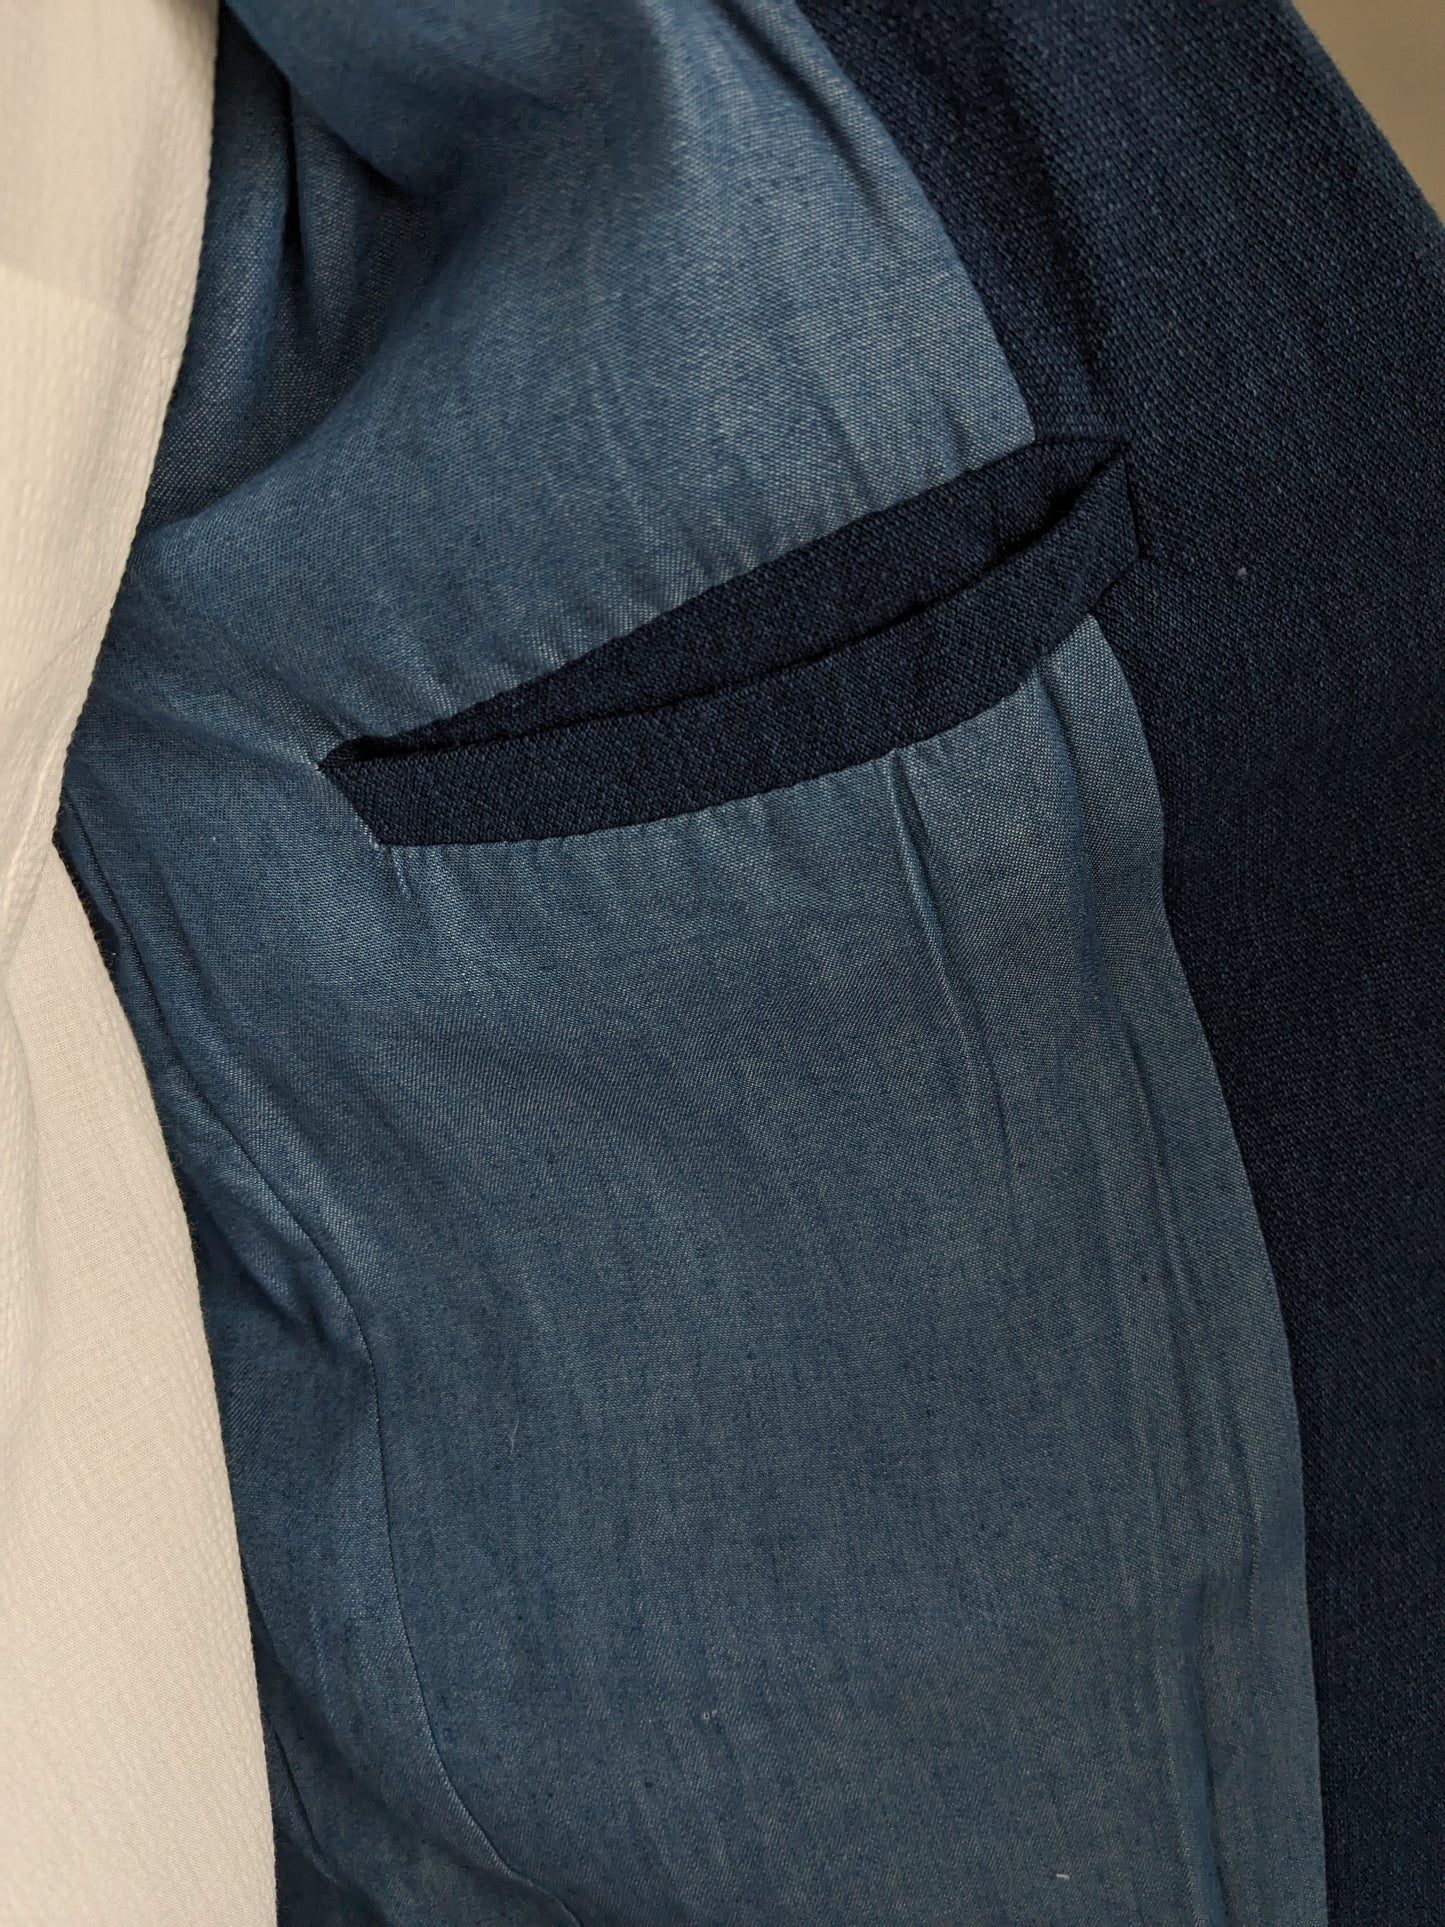 Refill casual colbert. Blauw gemêleerde jeans-look. Maat L.